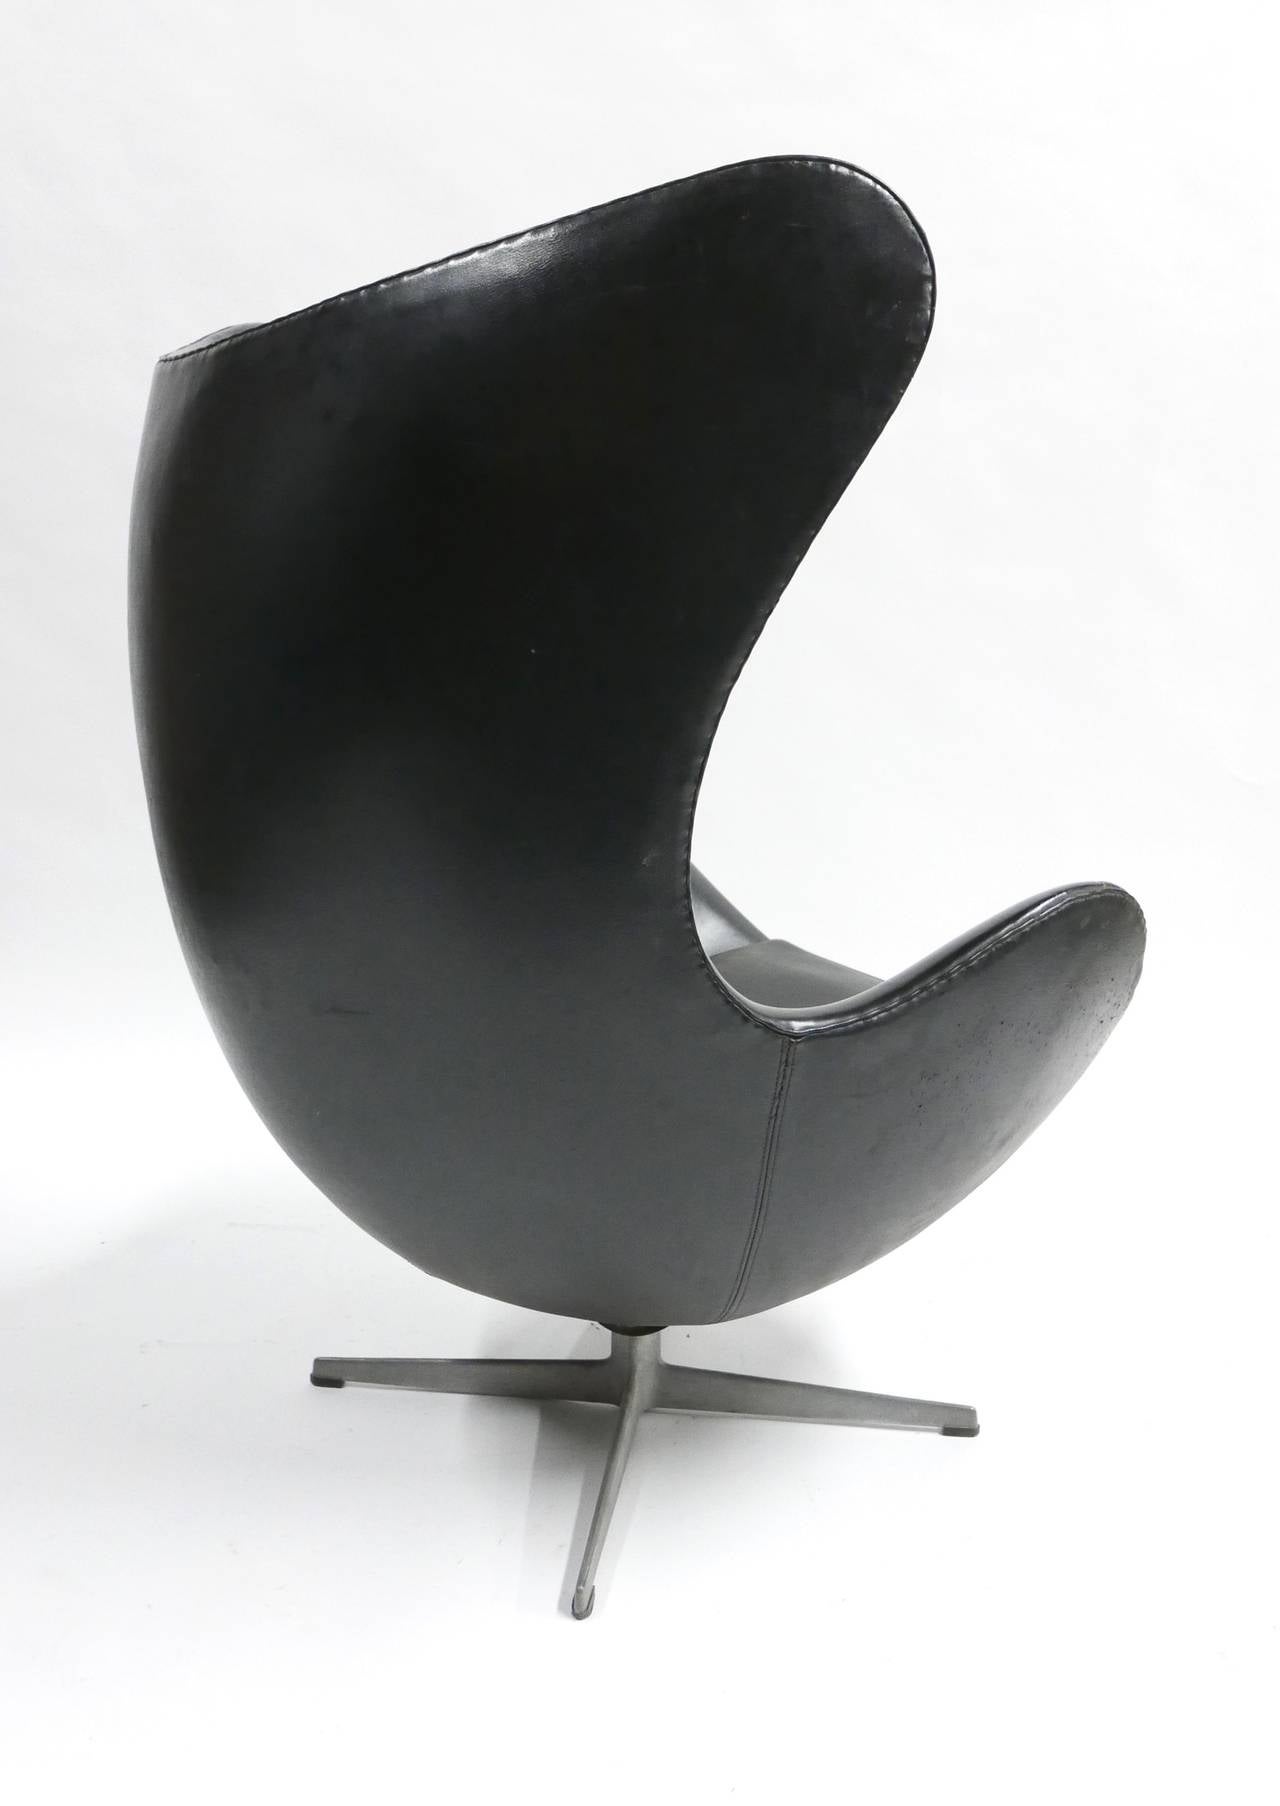 Danish Arne Jacobsen Egg Chair by Fritz Hansen